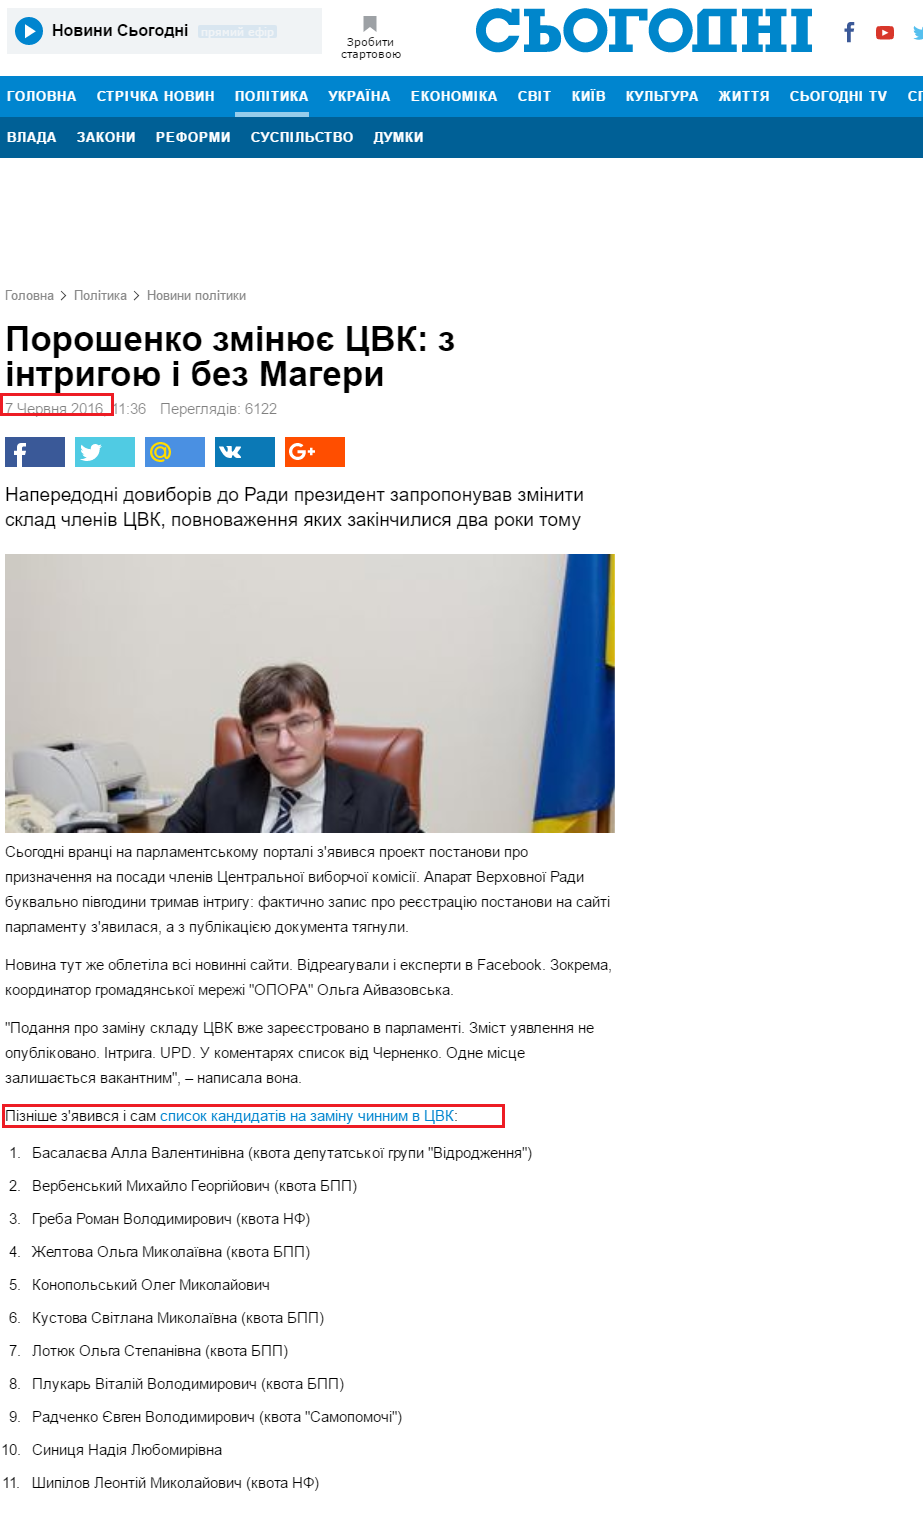 http://ukr.segodnya.ua/politics/pnews/poroshenko-menyaet-cik-s-intrigoy-i-bez-magery-722442.html